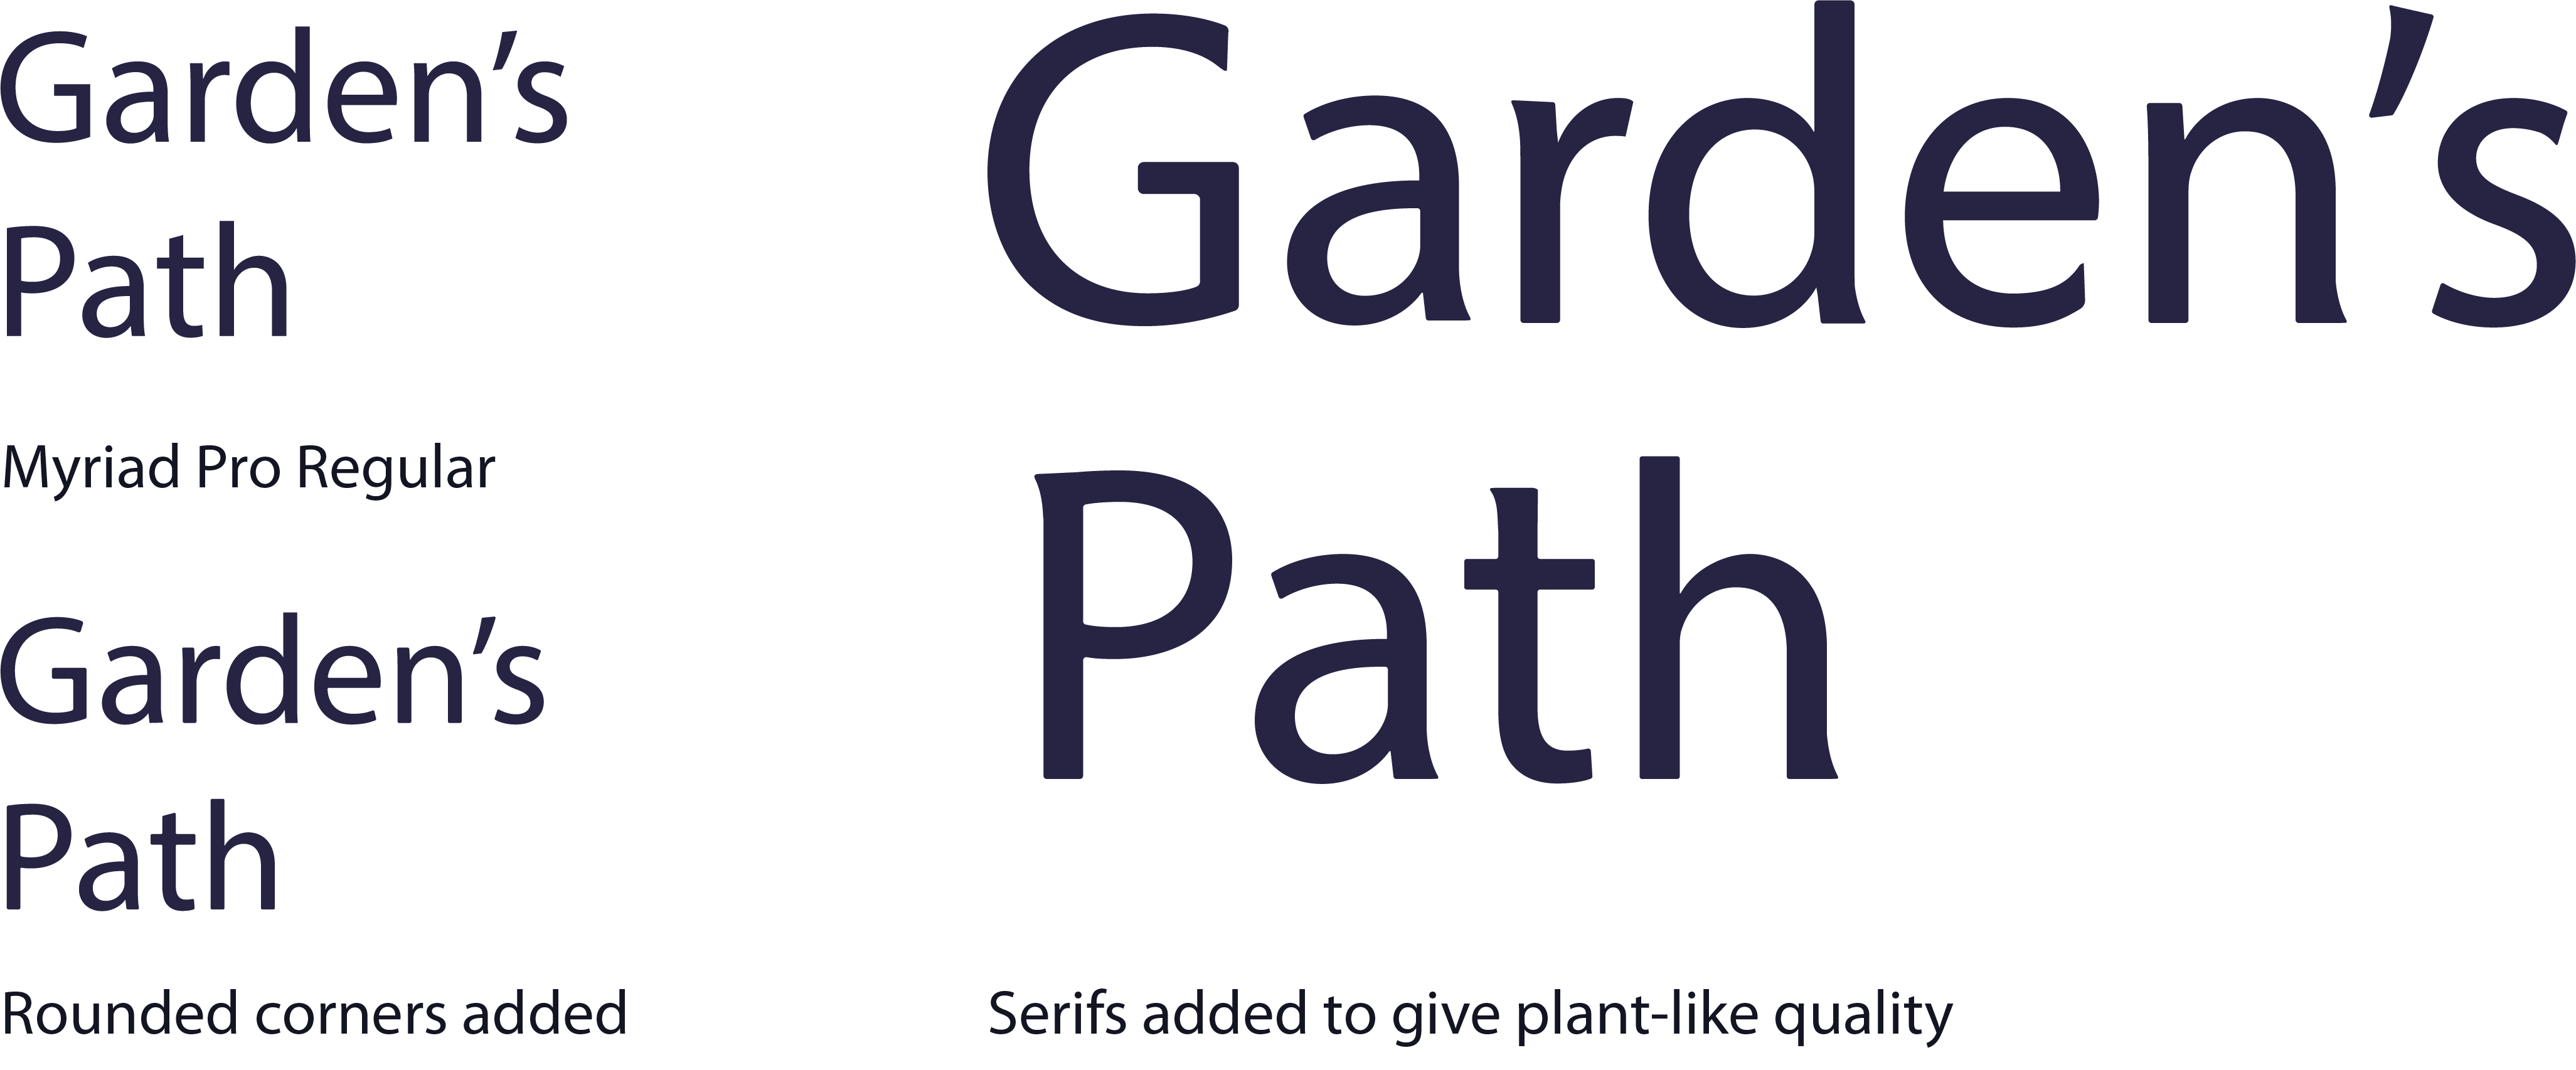 Garden's Path